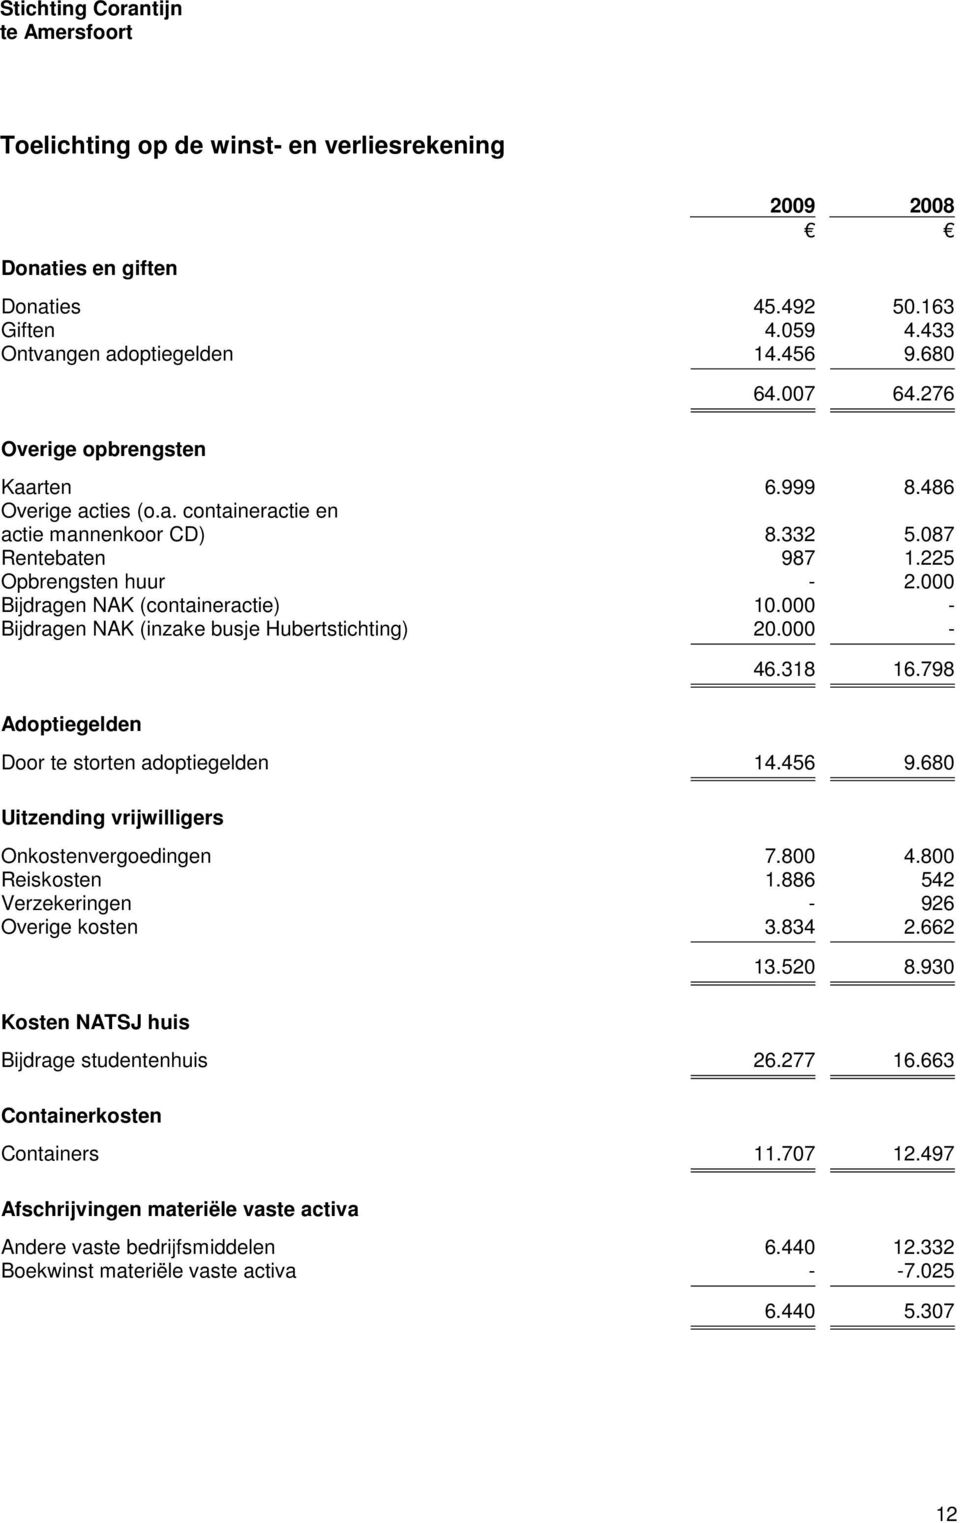 000 - Bijdragen NAK (inzake busje Hubertstichting) 20.000 - Adoptiegelden 46.318 16.798 Door te storten adoptiegelden 14.456 9.680 Uitzending vrijwilligers Onkostenvergoedingen 7.800 4.